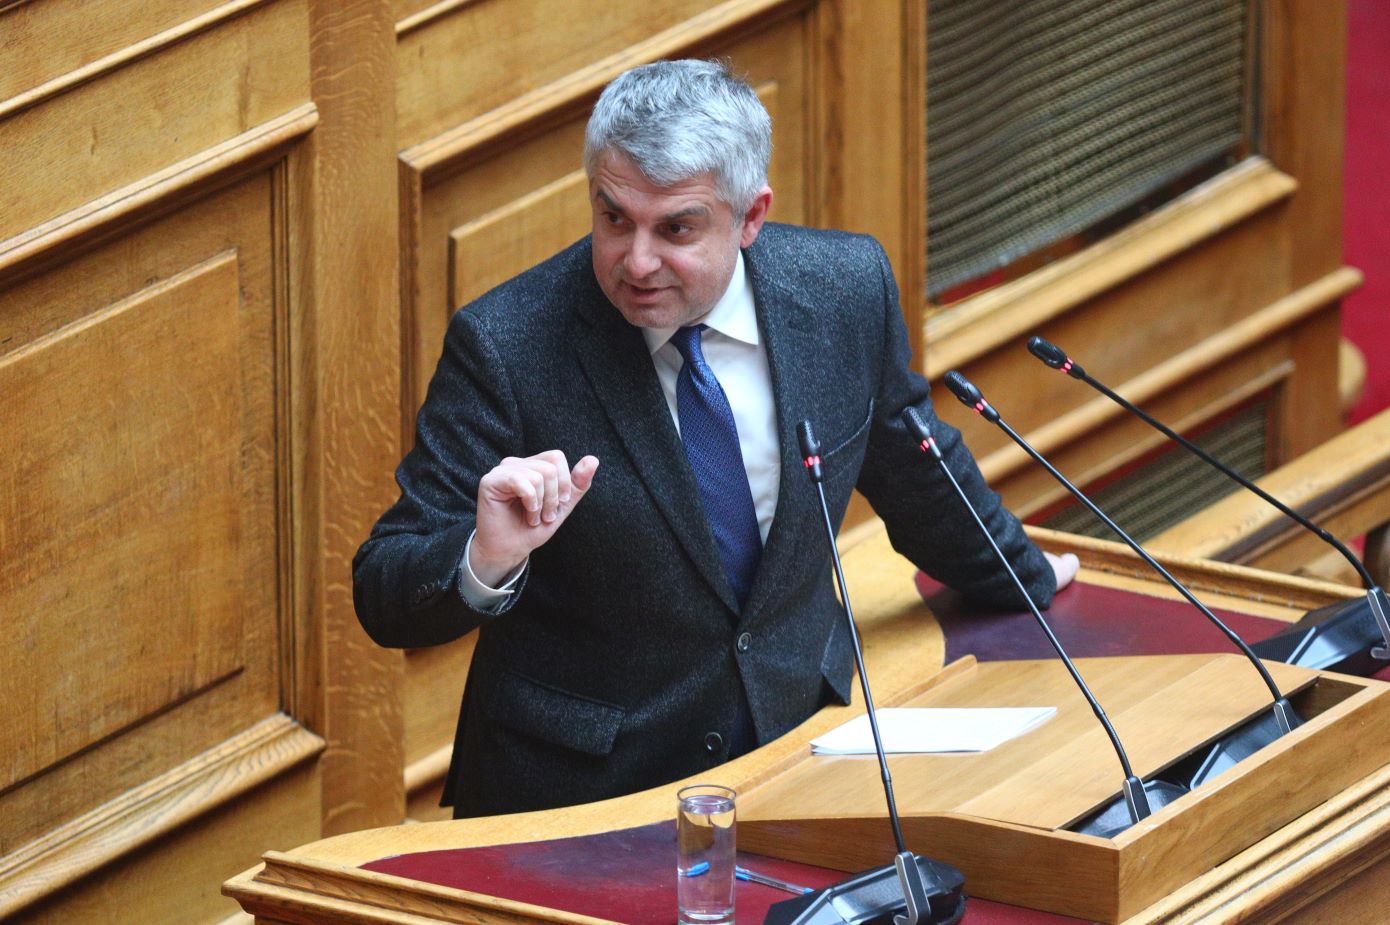 Επιμένει ο Κωνσταντινόπουλος: Πρέπει να βρεθεί ηγεσία στο ΠΑΣΟΚ που μπορεί να κερδίσει τον Μητσοτάκη